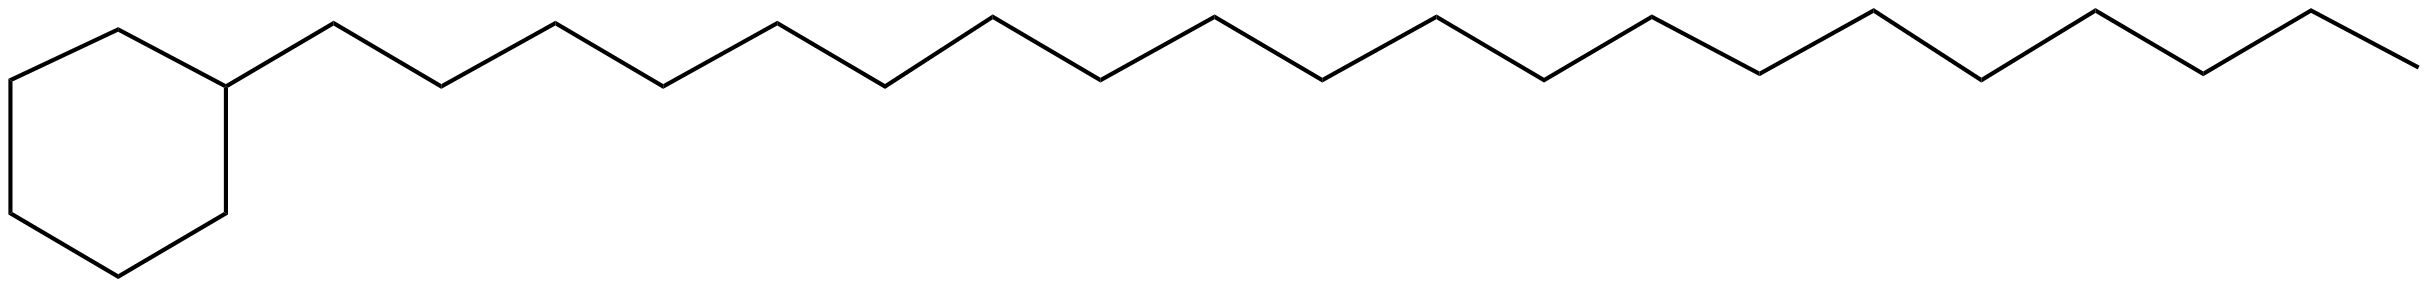 Image of cyclohexane, eicosyl-